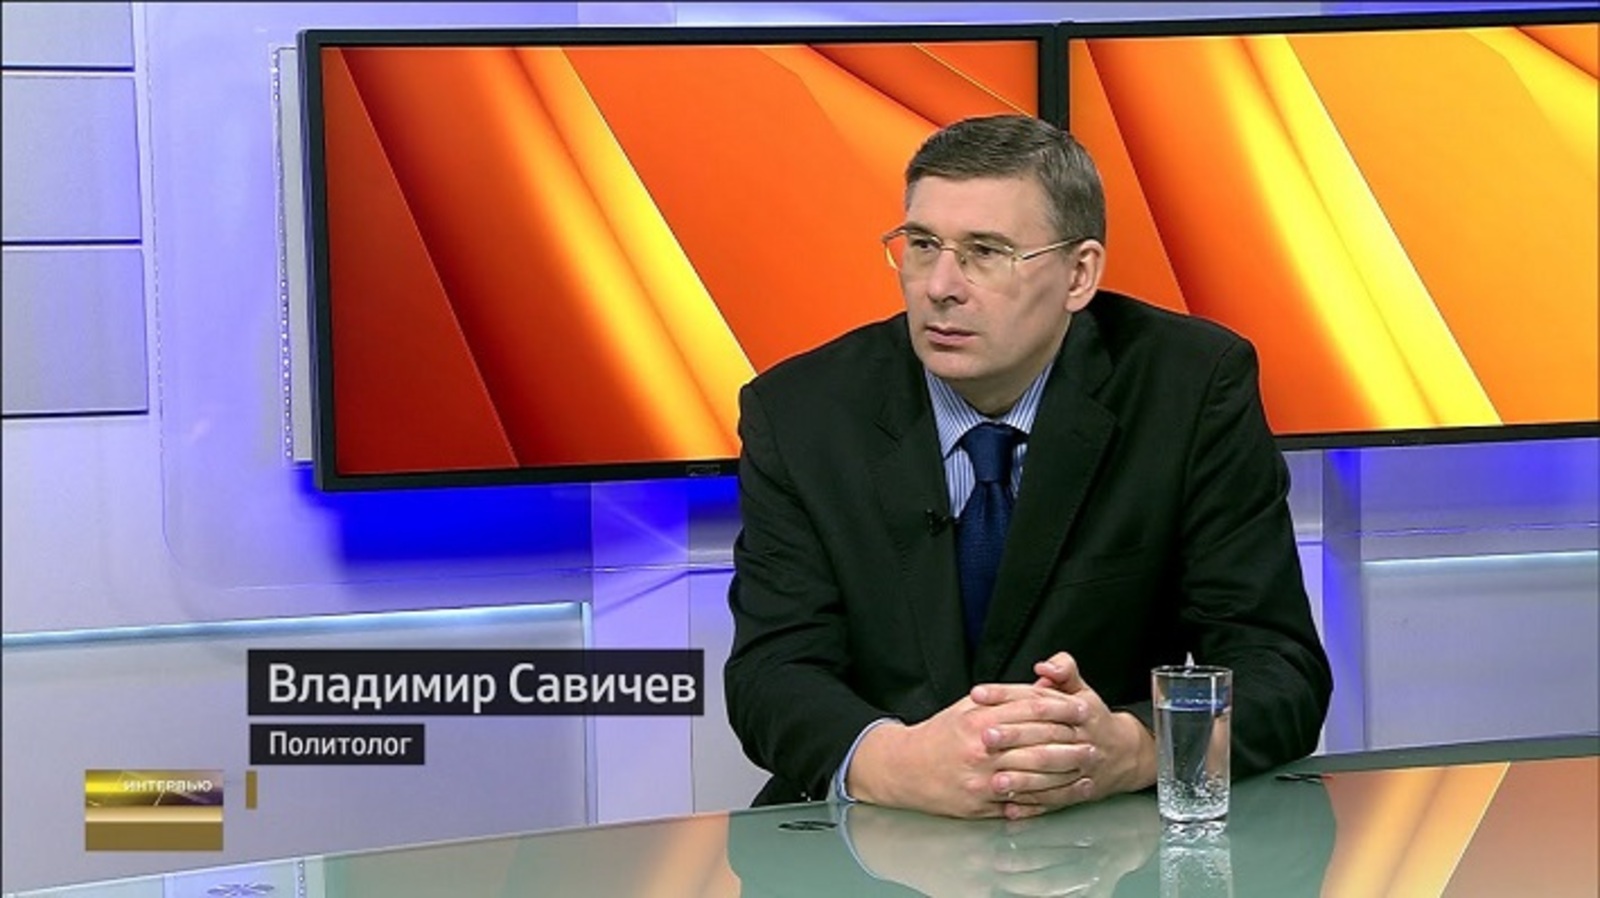 Владимир Савичев: Западные политики пытаются противопоставить жителей Европы и России